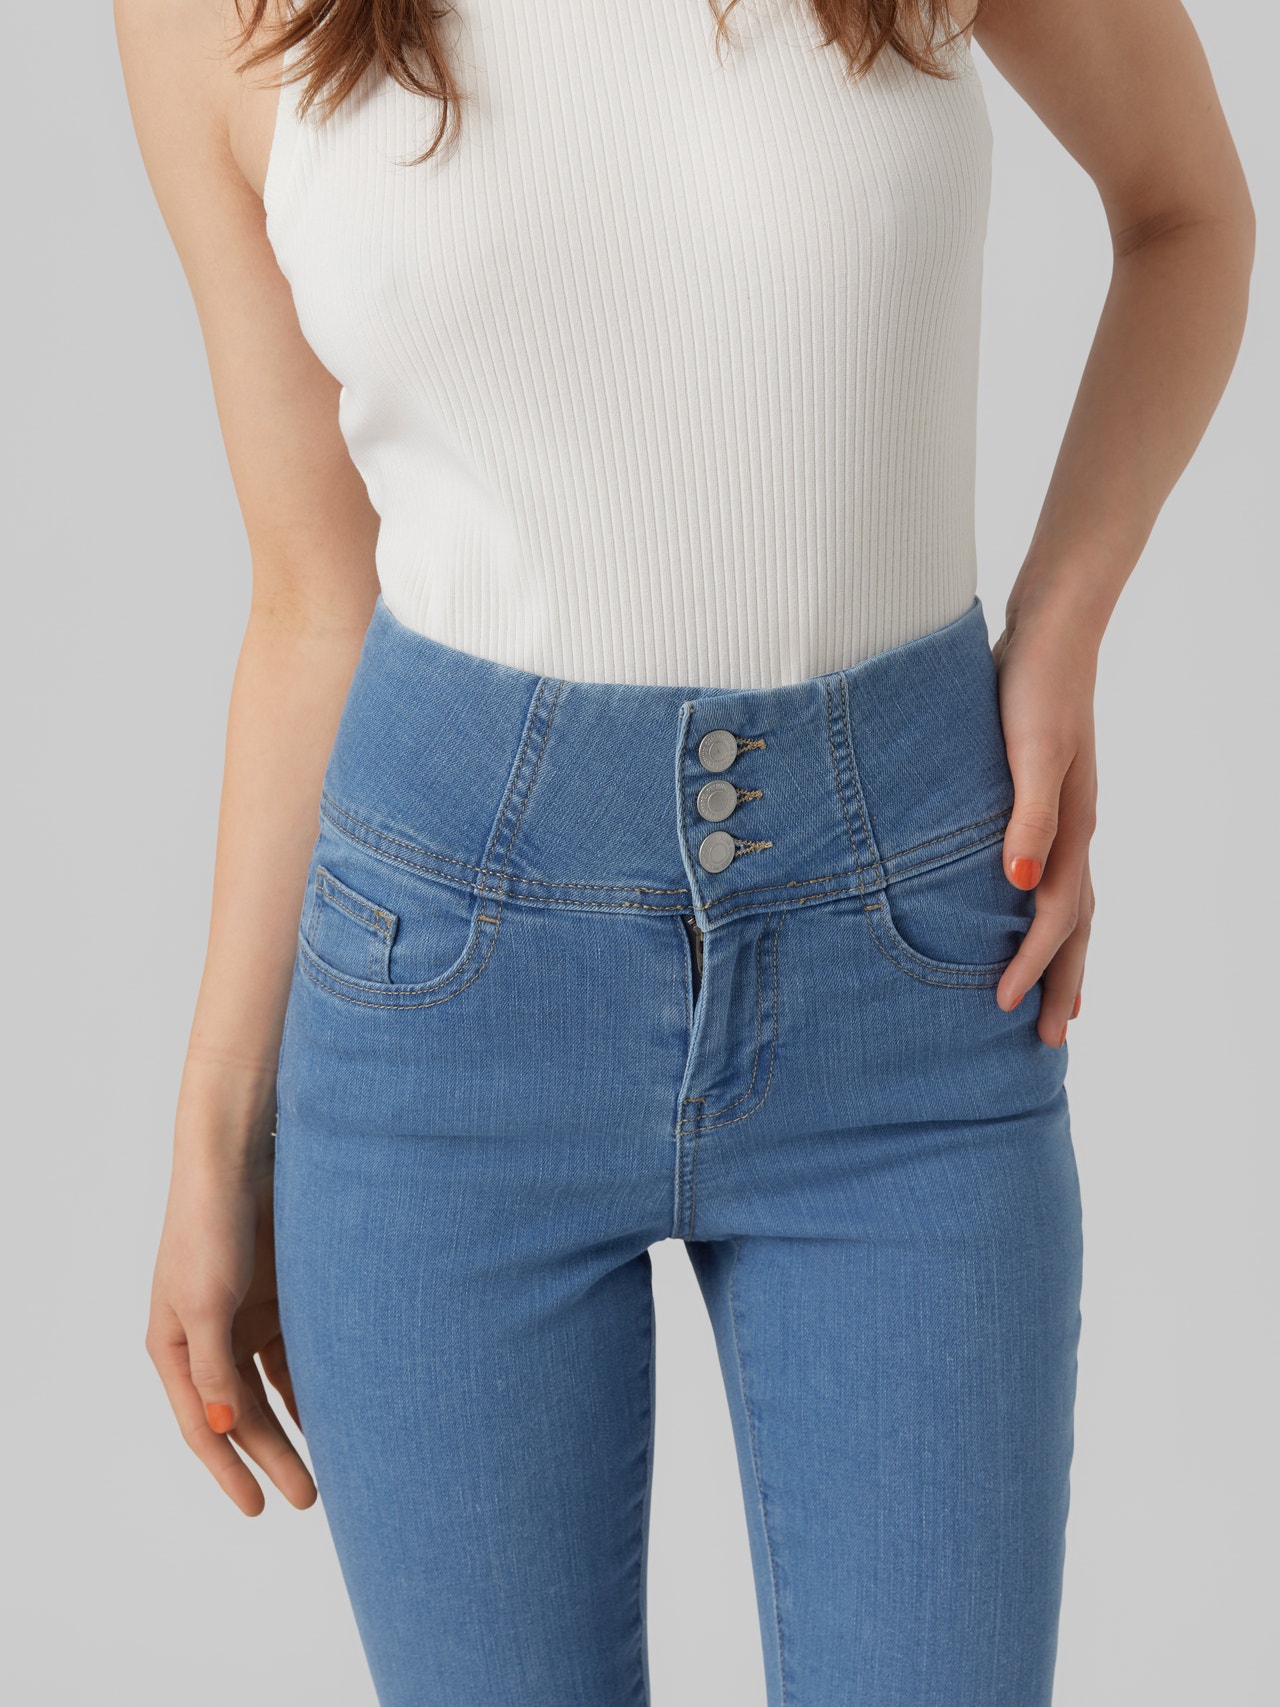 bruger Skal udledning Skinny Fit Super high rise Jeans with 30% discount! | Vero Moda®